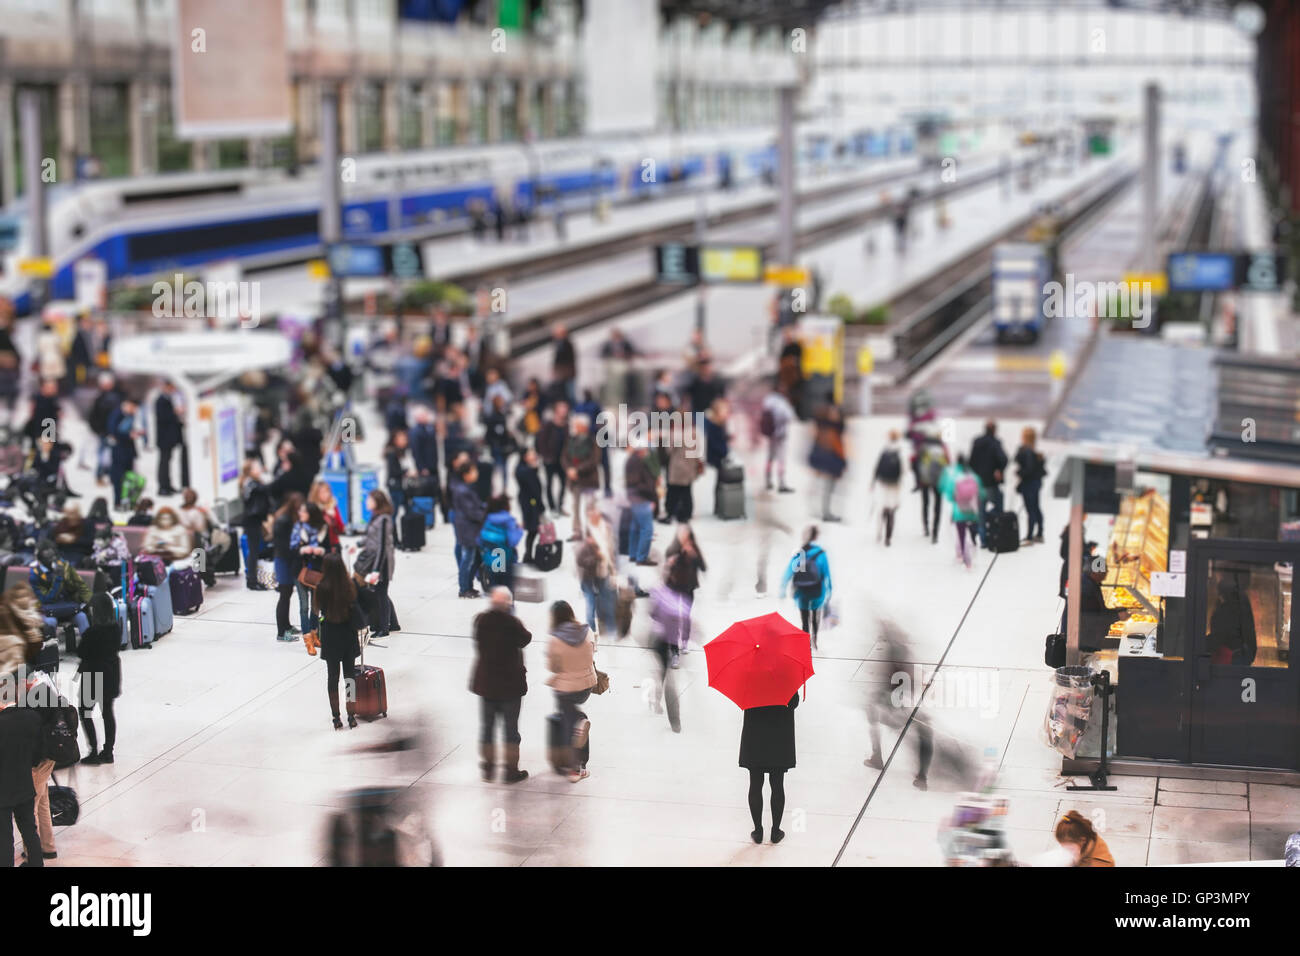 Femme avec parapluie rouge en attente à la gare et le flou des gens en mouvement, concept de la solitude Banque D'Images